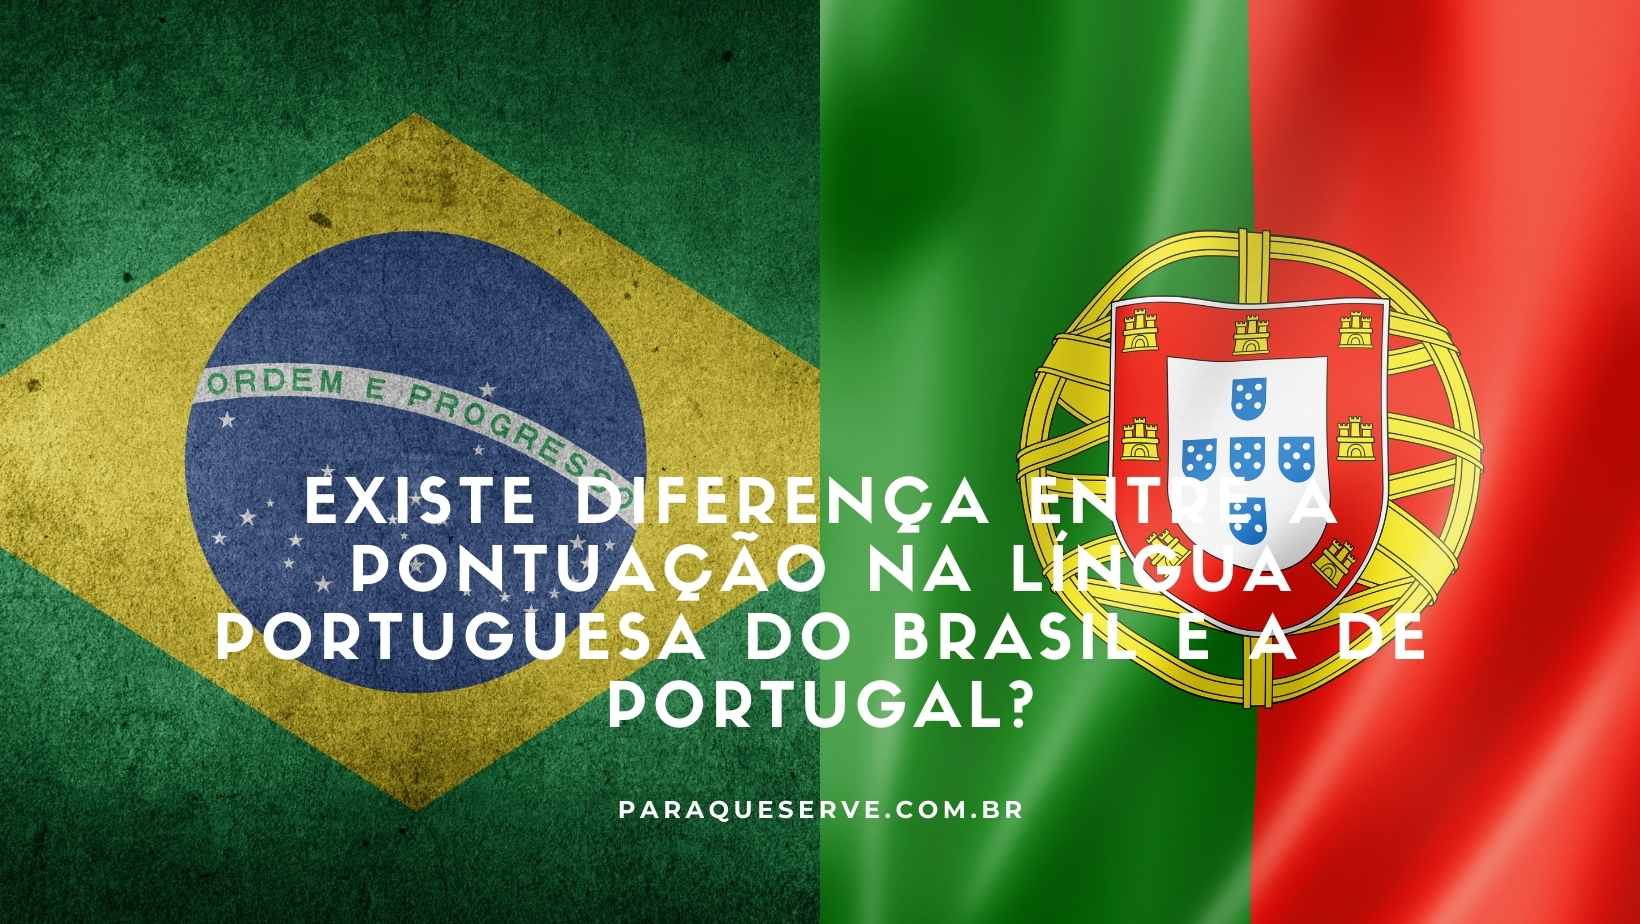 Existe diferença entre a pontuação na língua portuguesa do Brasil e a de Portugal